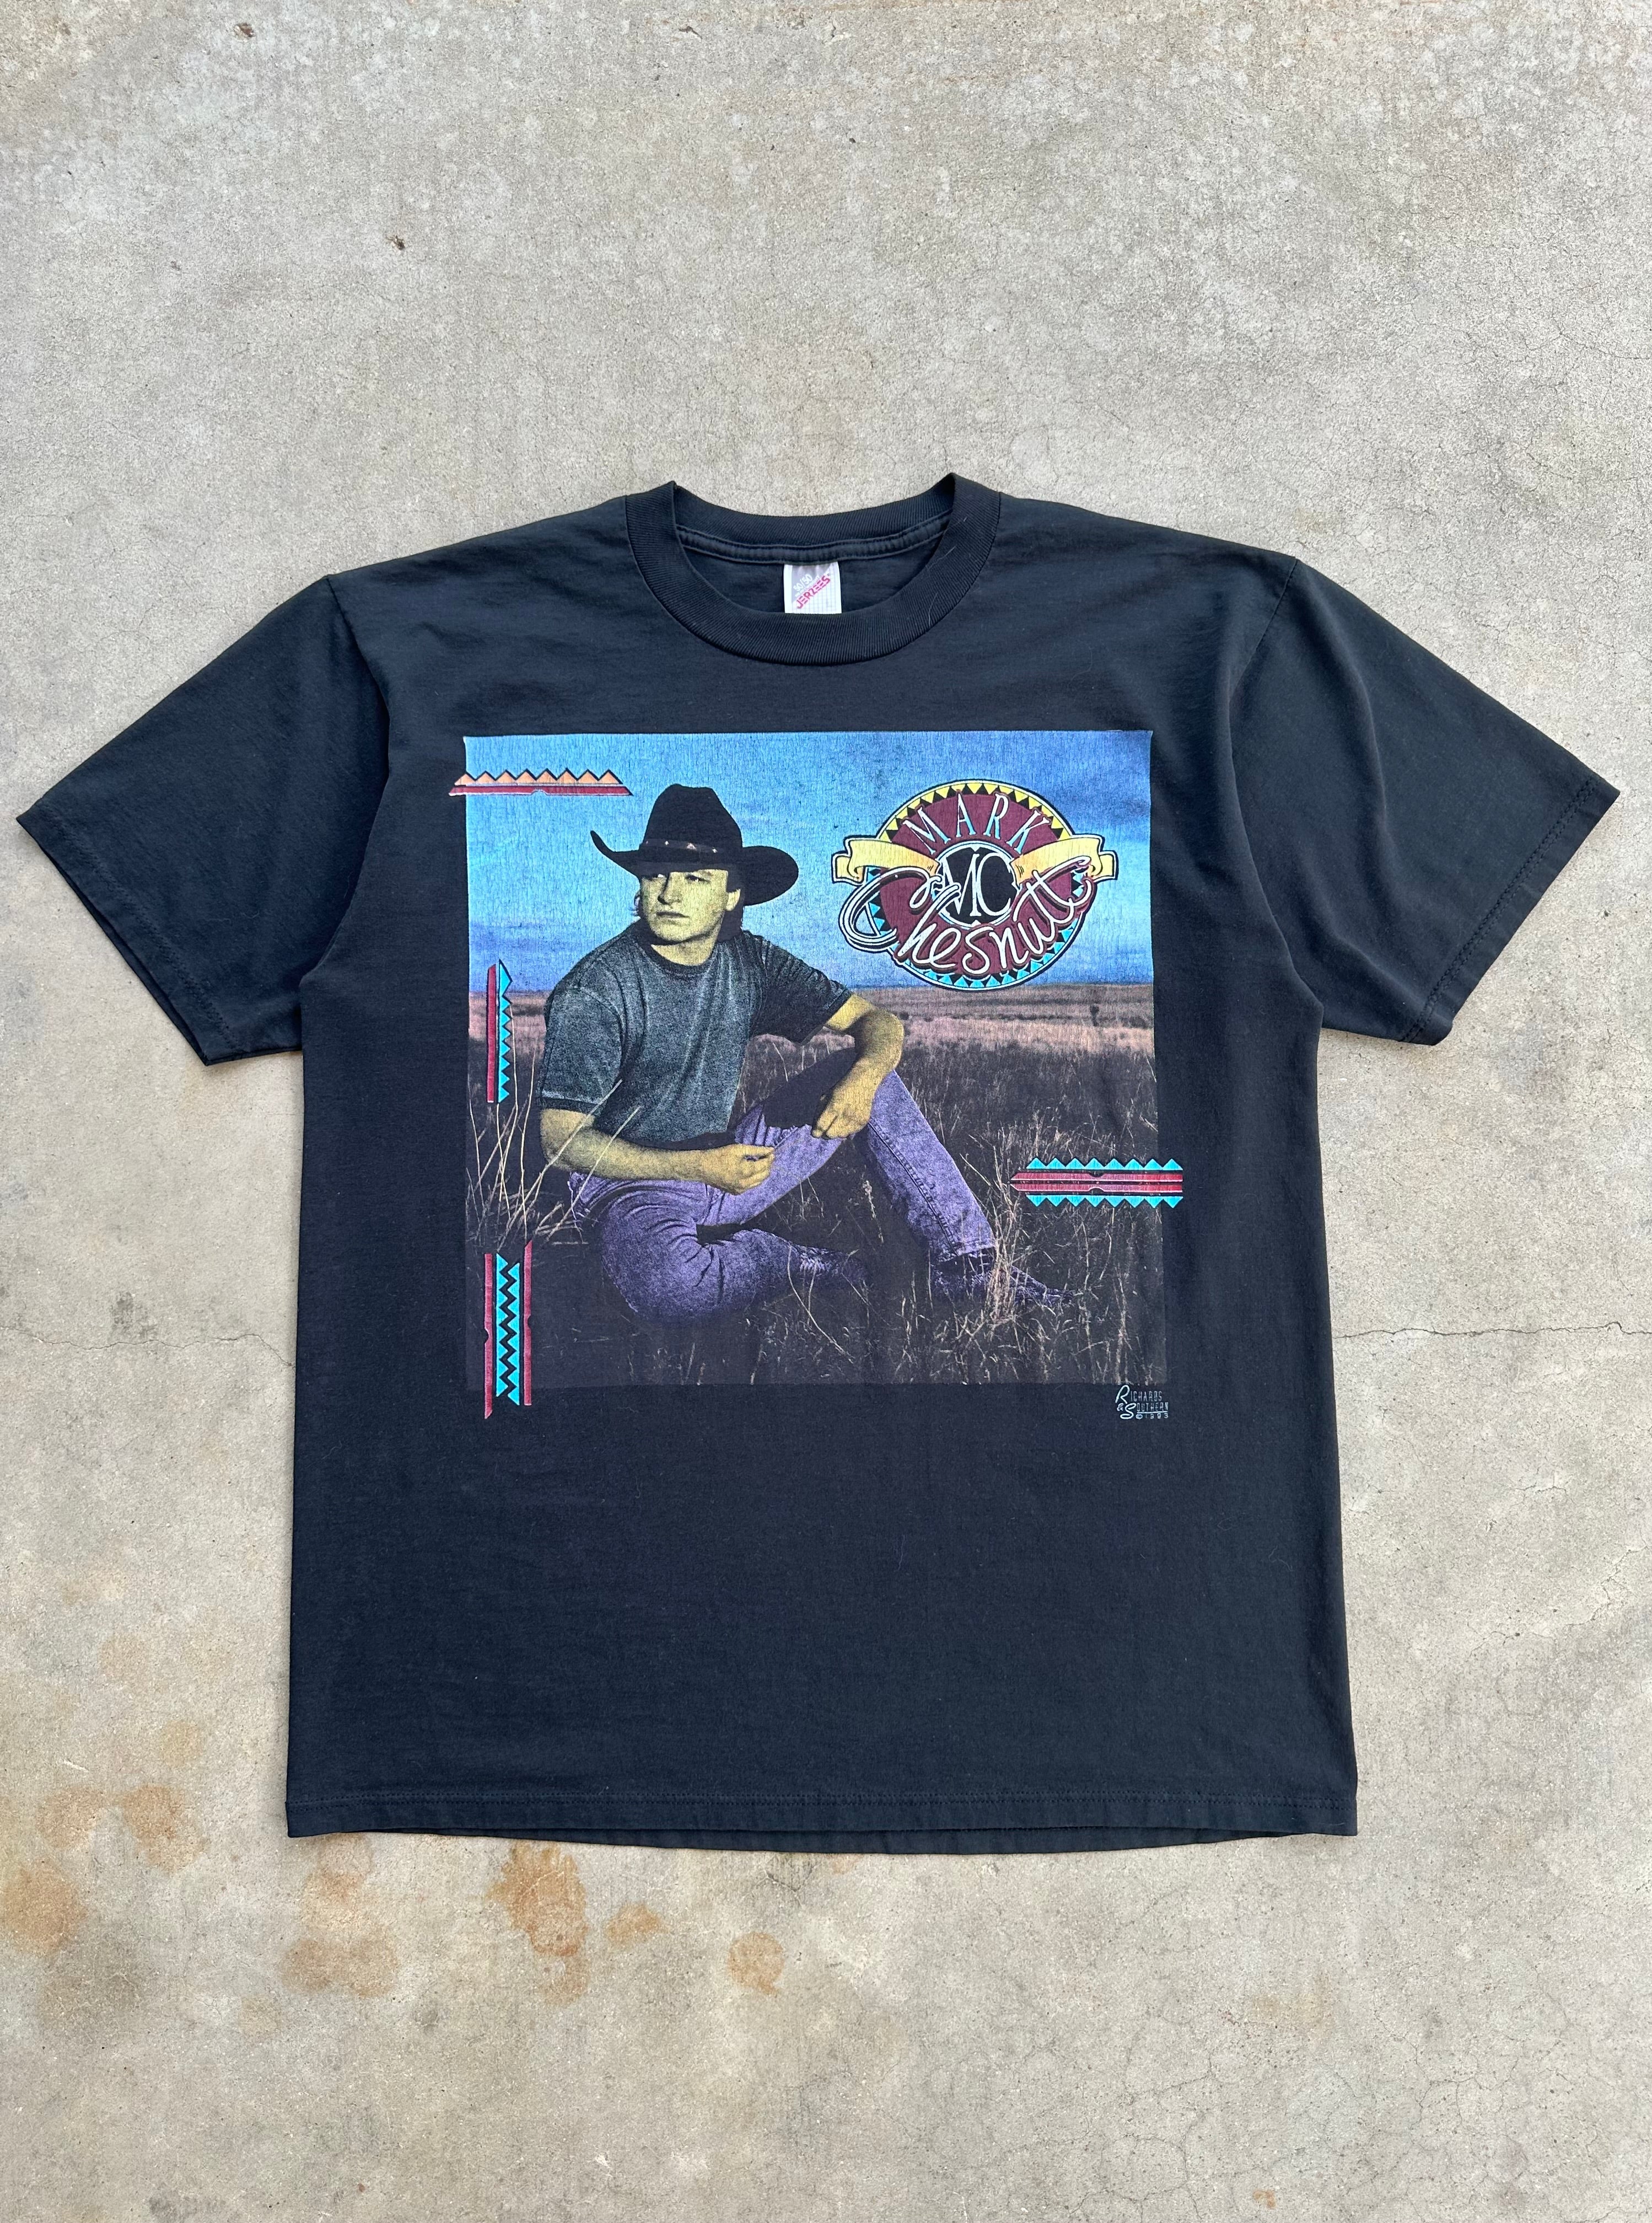 Vintage 1990’s Mark Chestnut Tour T-Shirt (L)